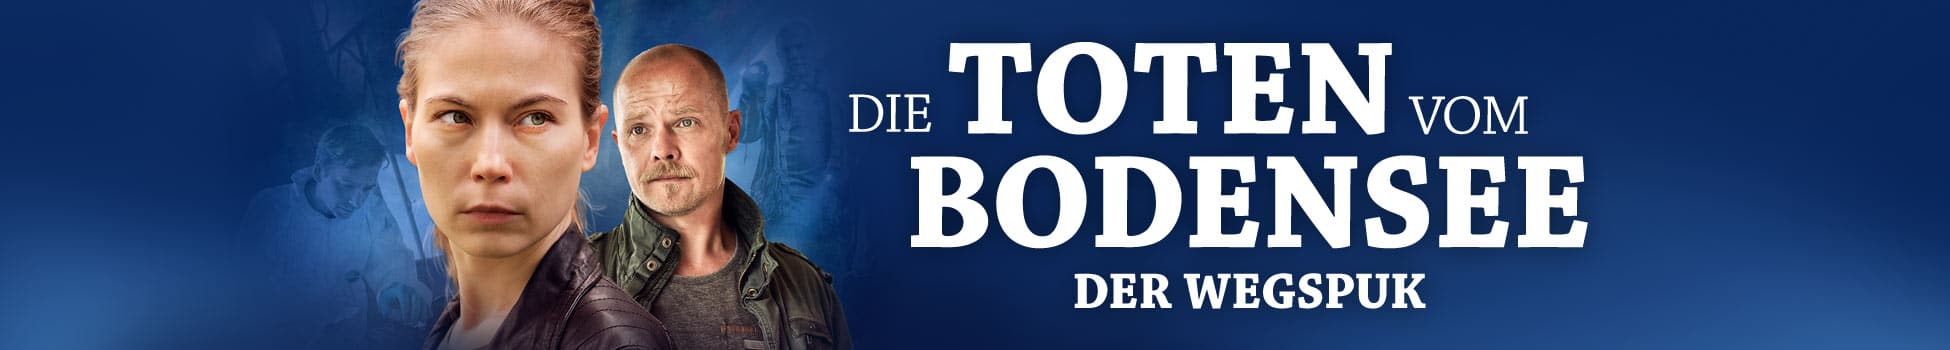 Die Toten vom Bodensee: Der Wegspuk - Artwork - Key Visual - Header